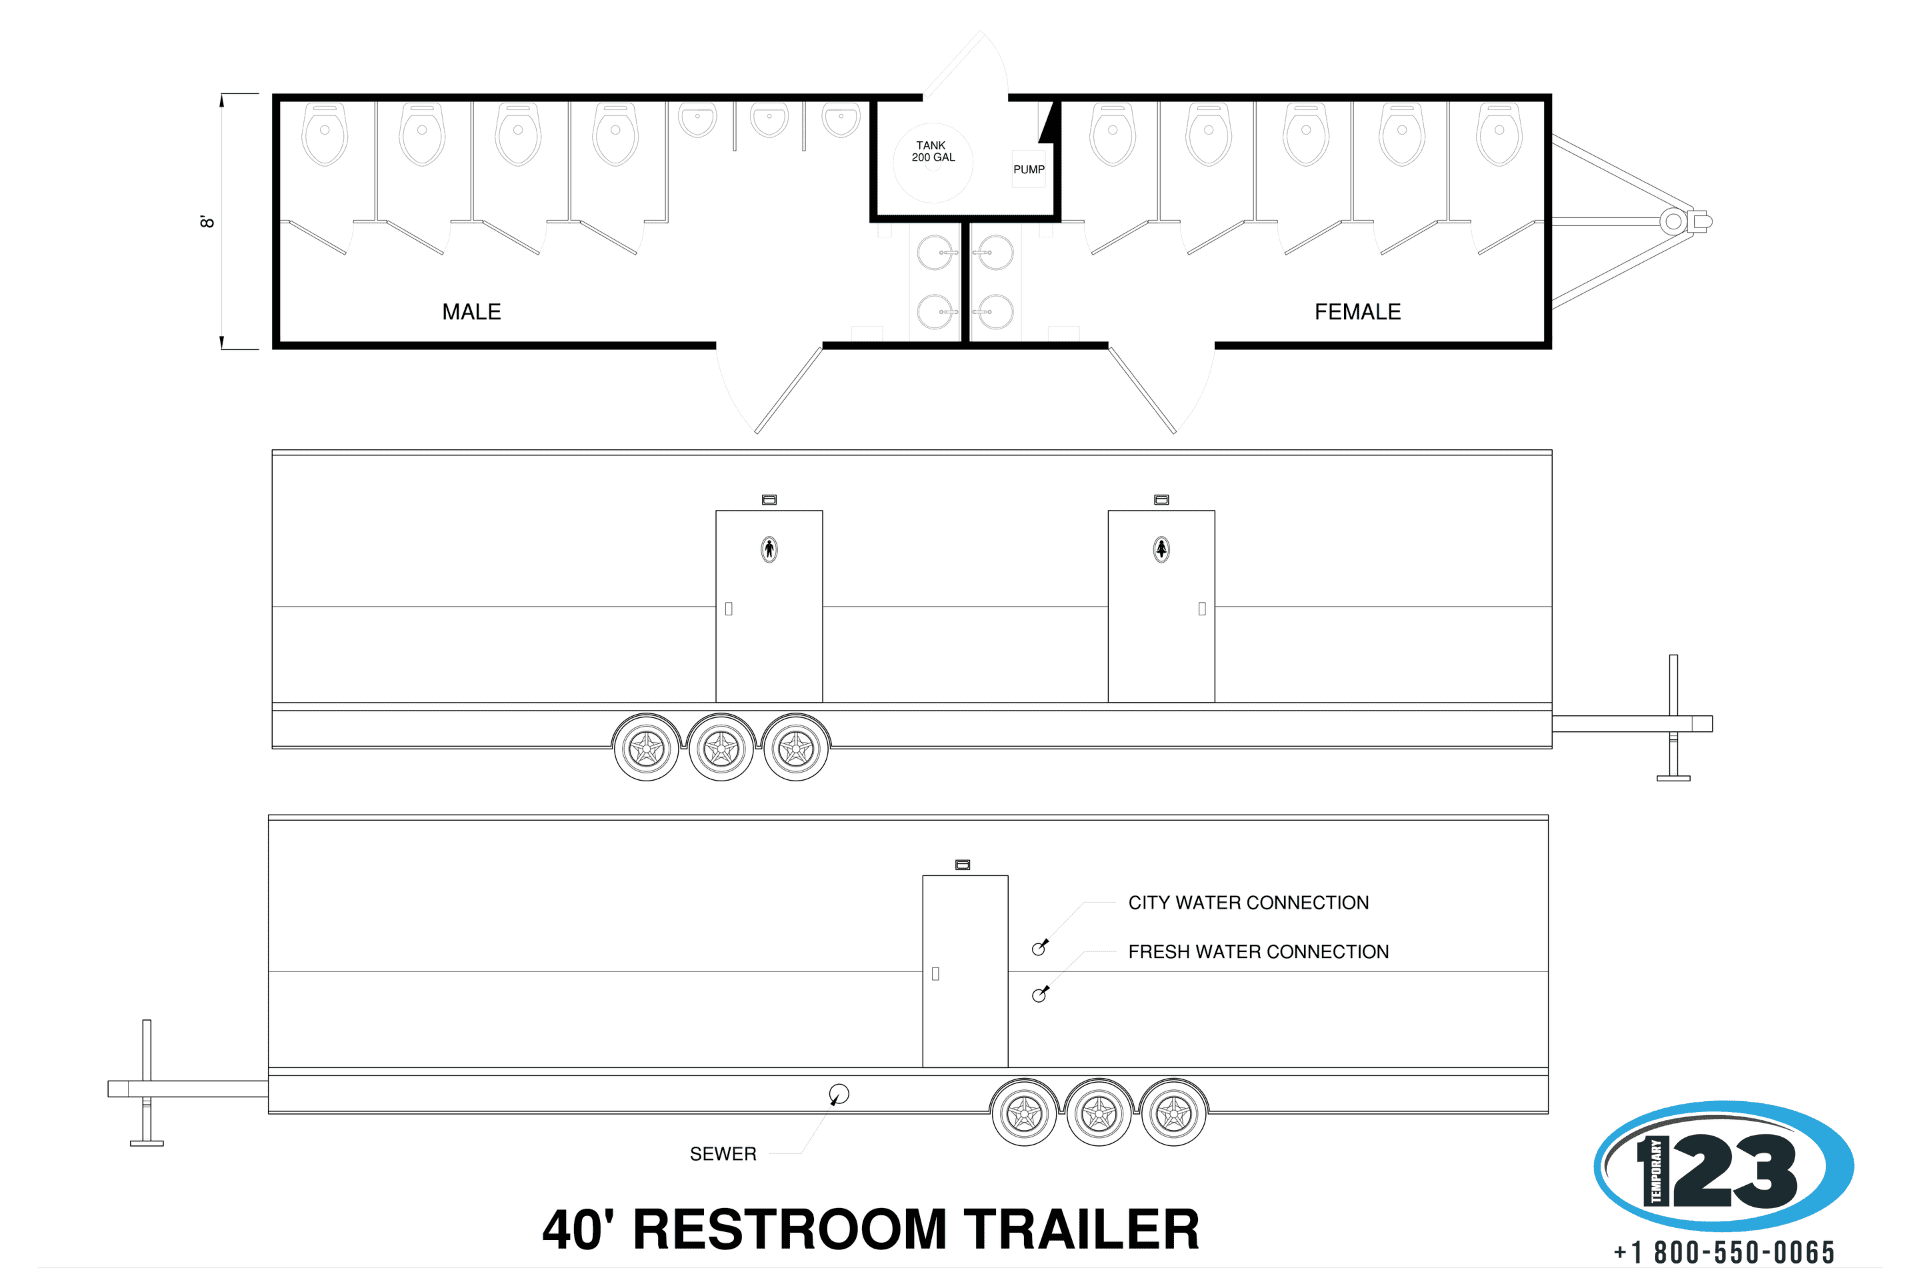 Restroom Trailer Design